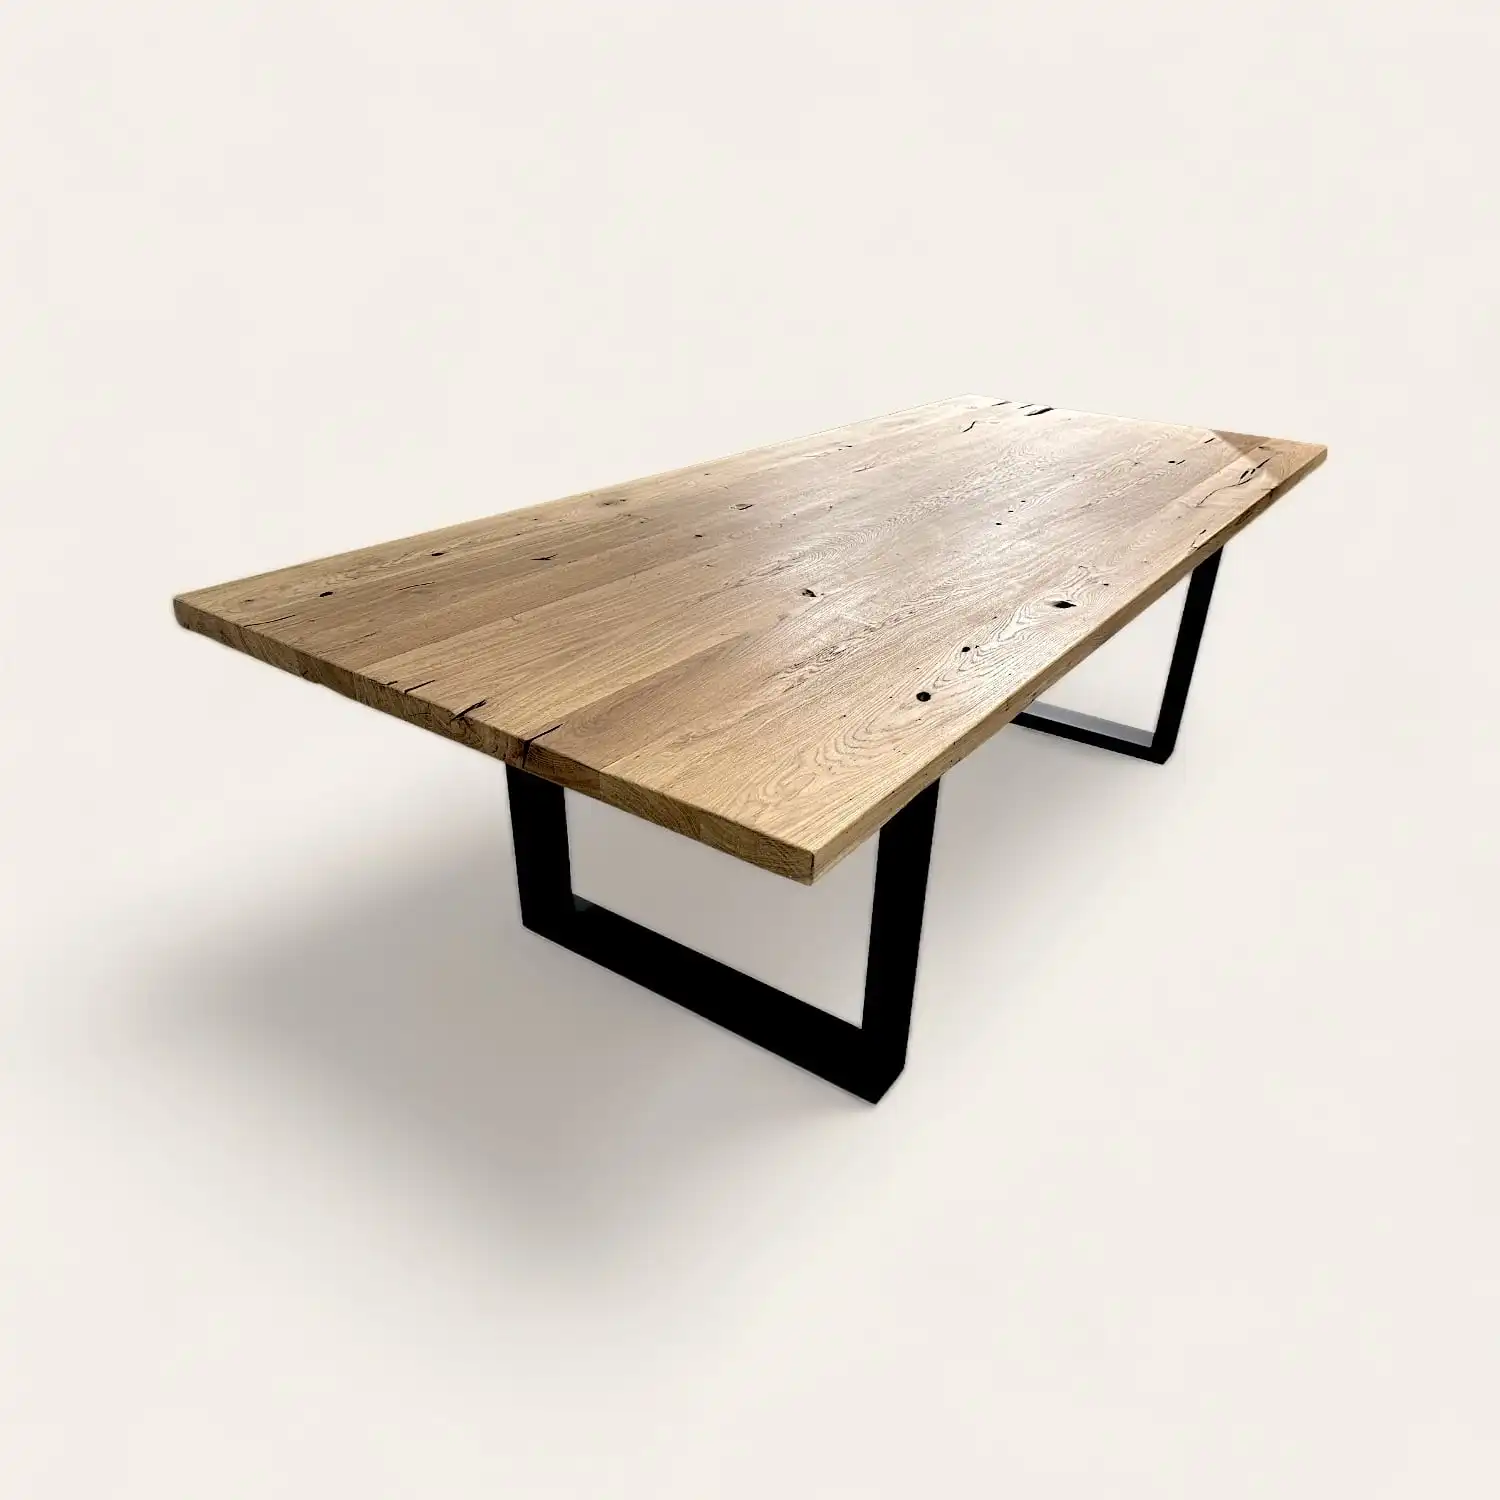  Table de repas ancienne avec plateau en bois patiné et pieds métalliques noirs carrés, mêlant rusticité et modernité pour intérieur tendance. 